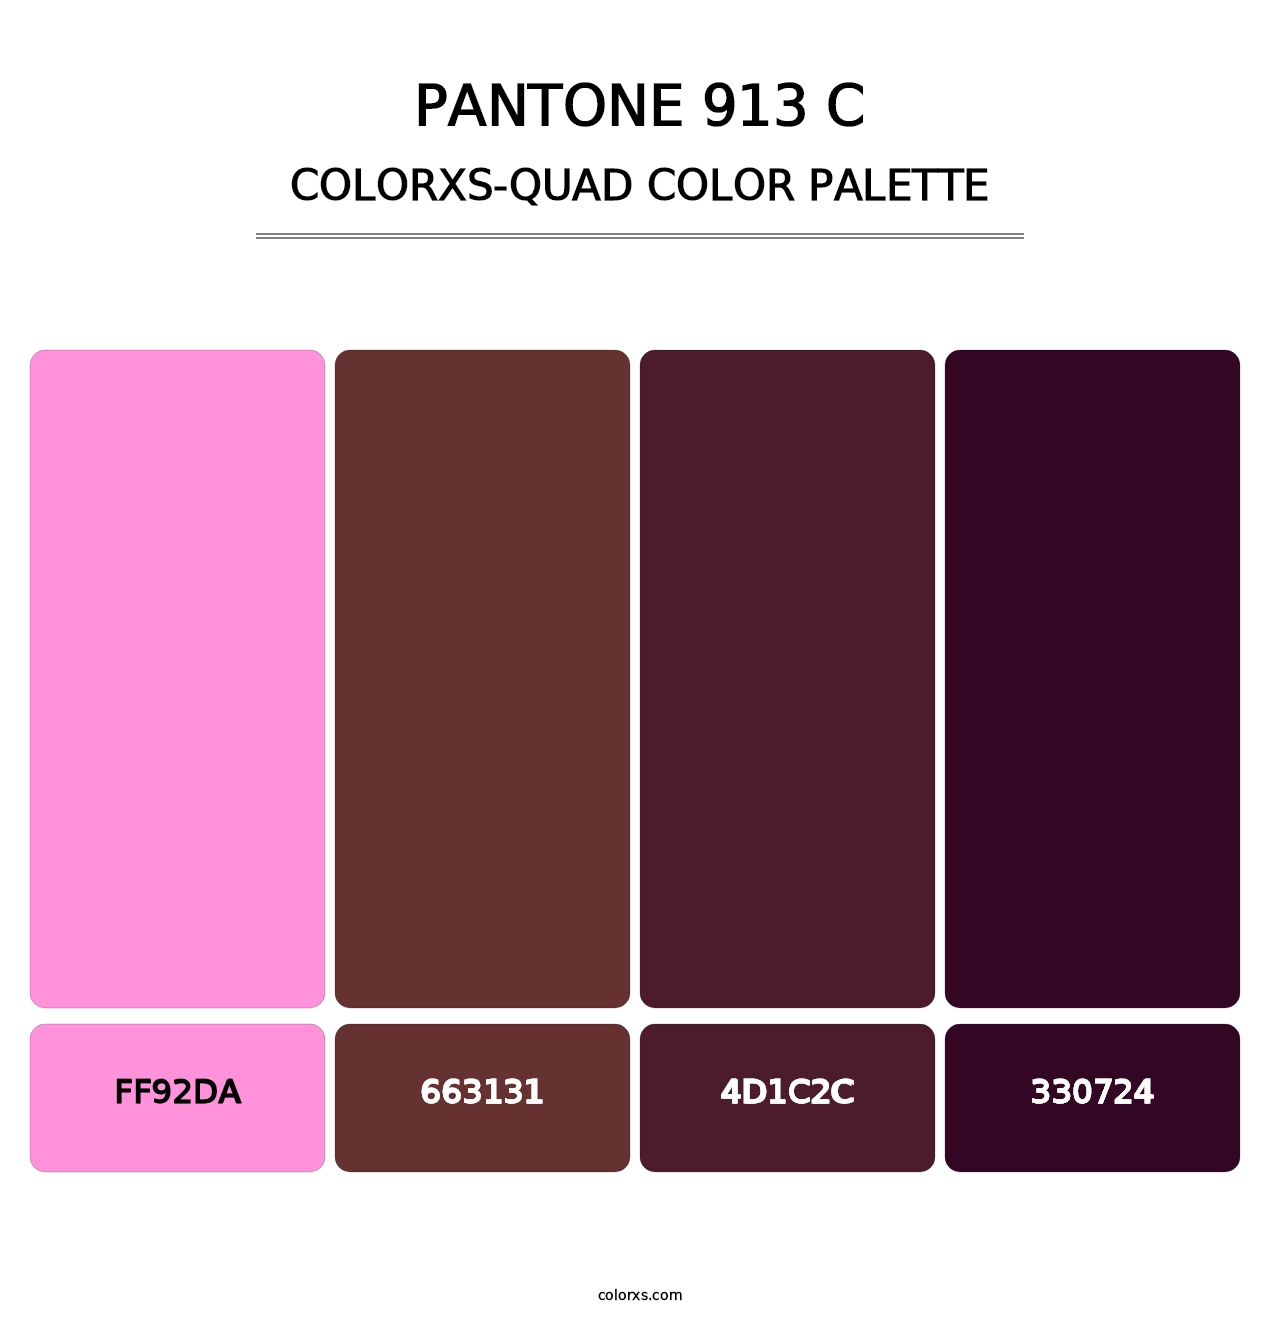 PANTONE 913 C - Colorxs Quad Palette